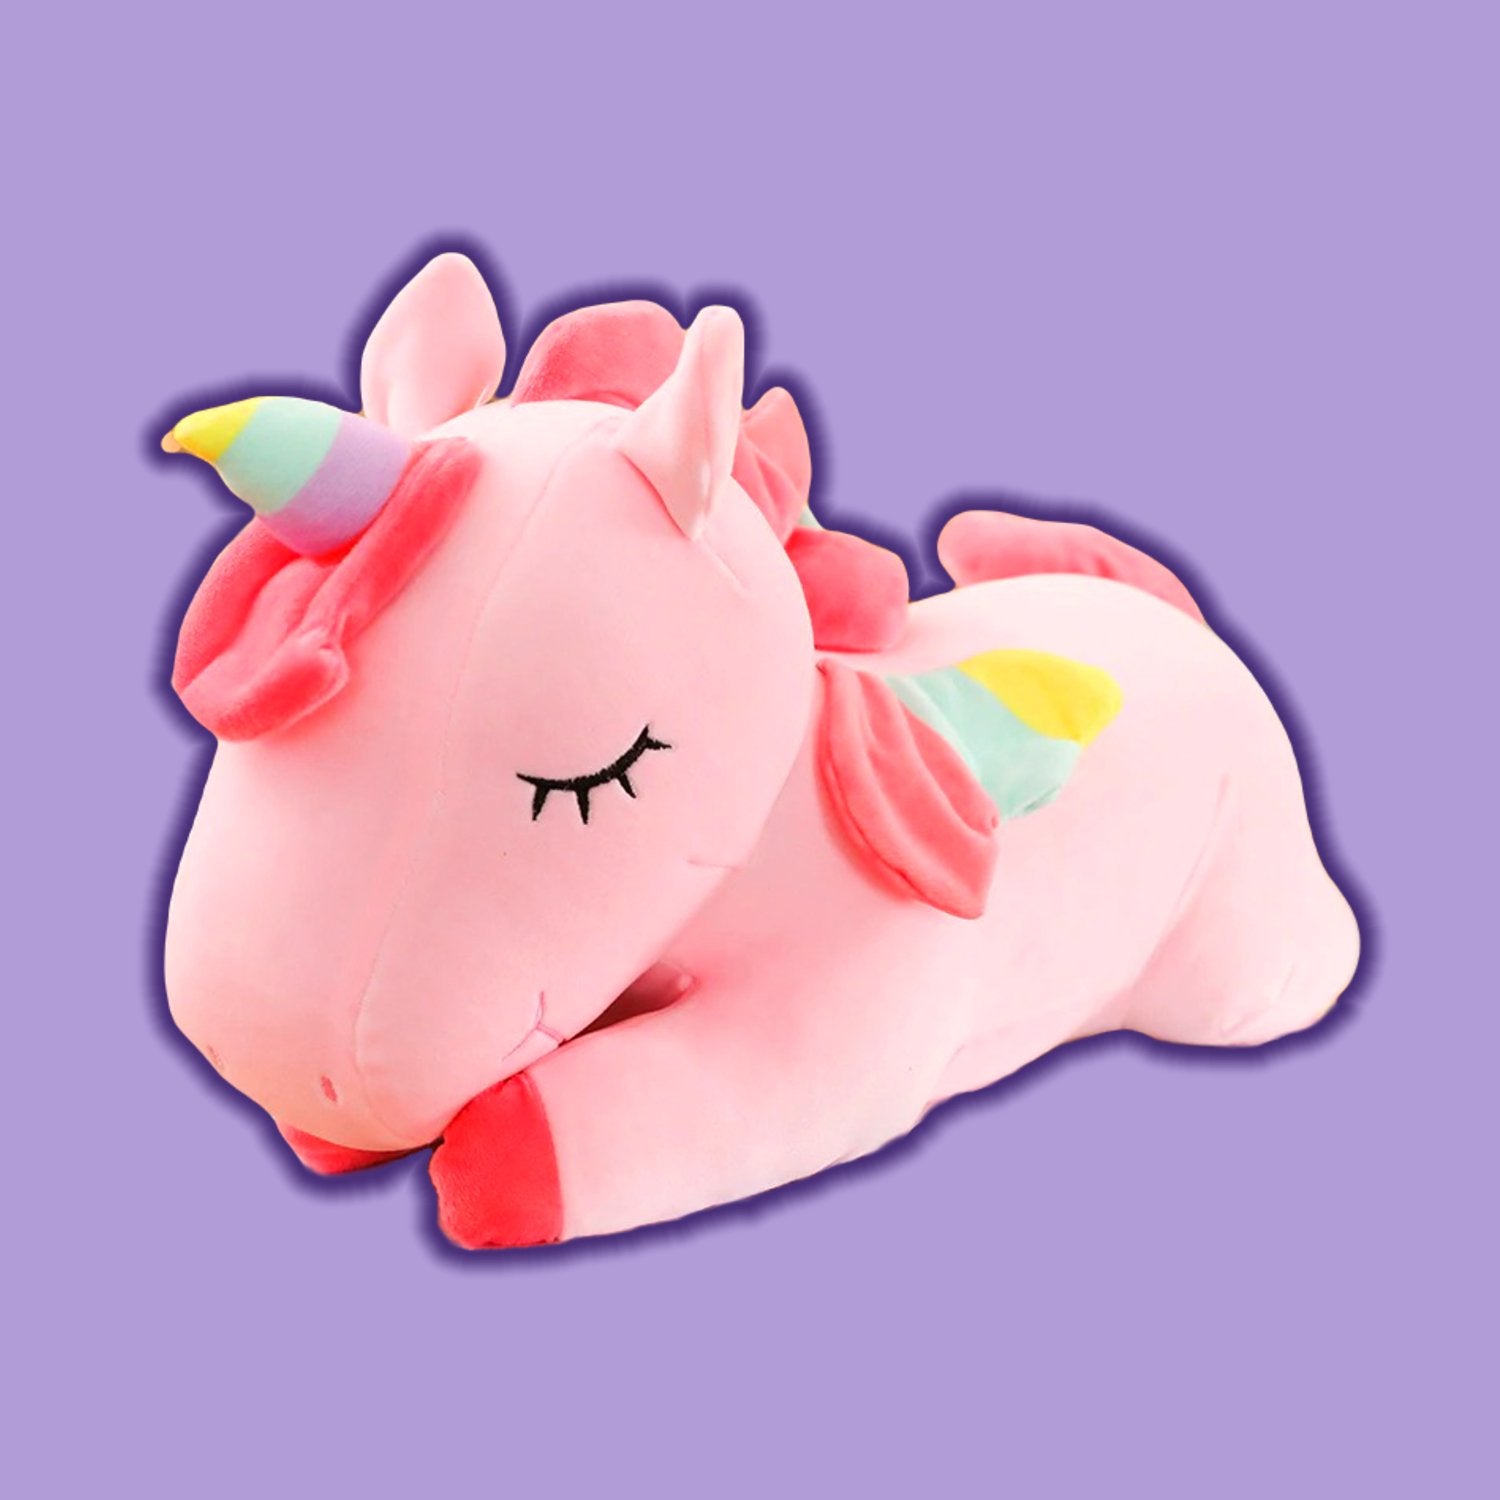 Kawaii Unicorn Plush Toy Soft Stuffed Pillow